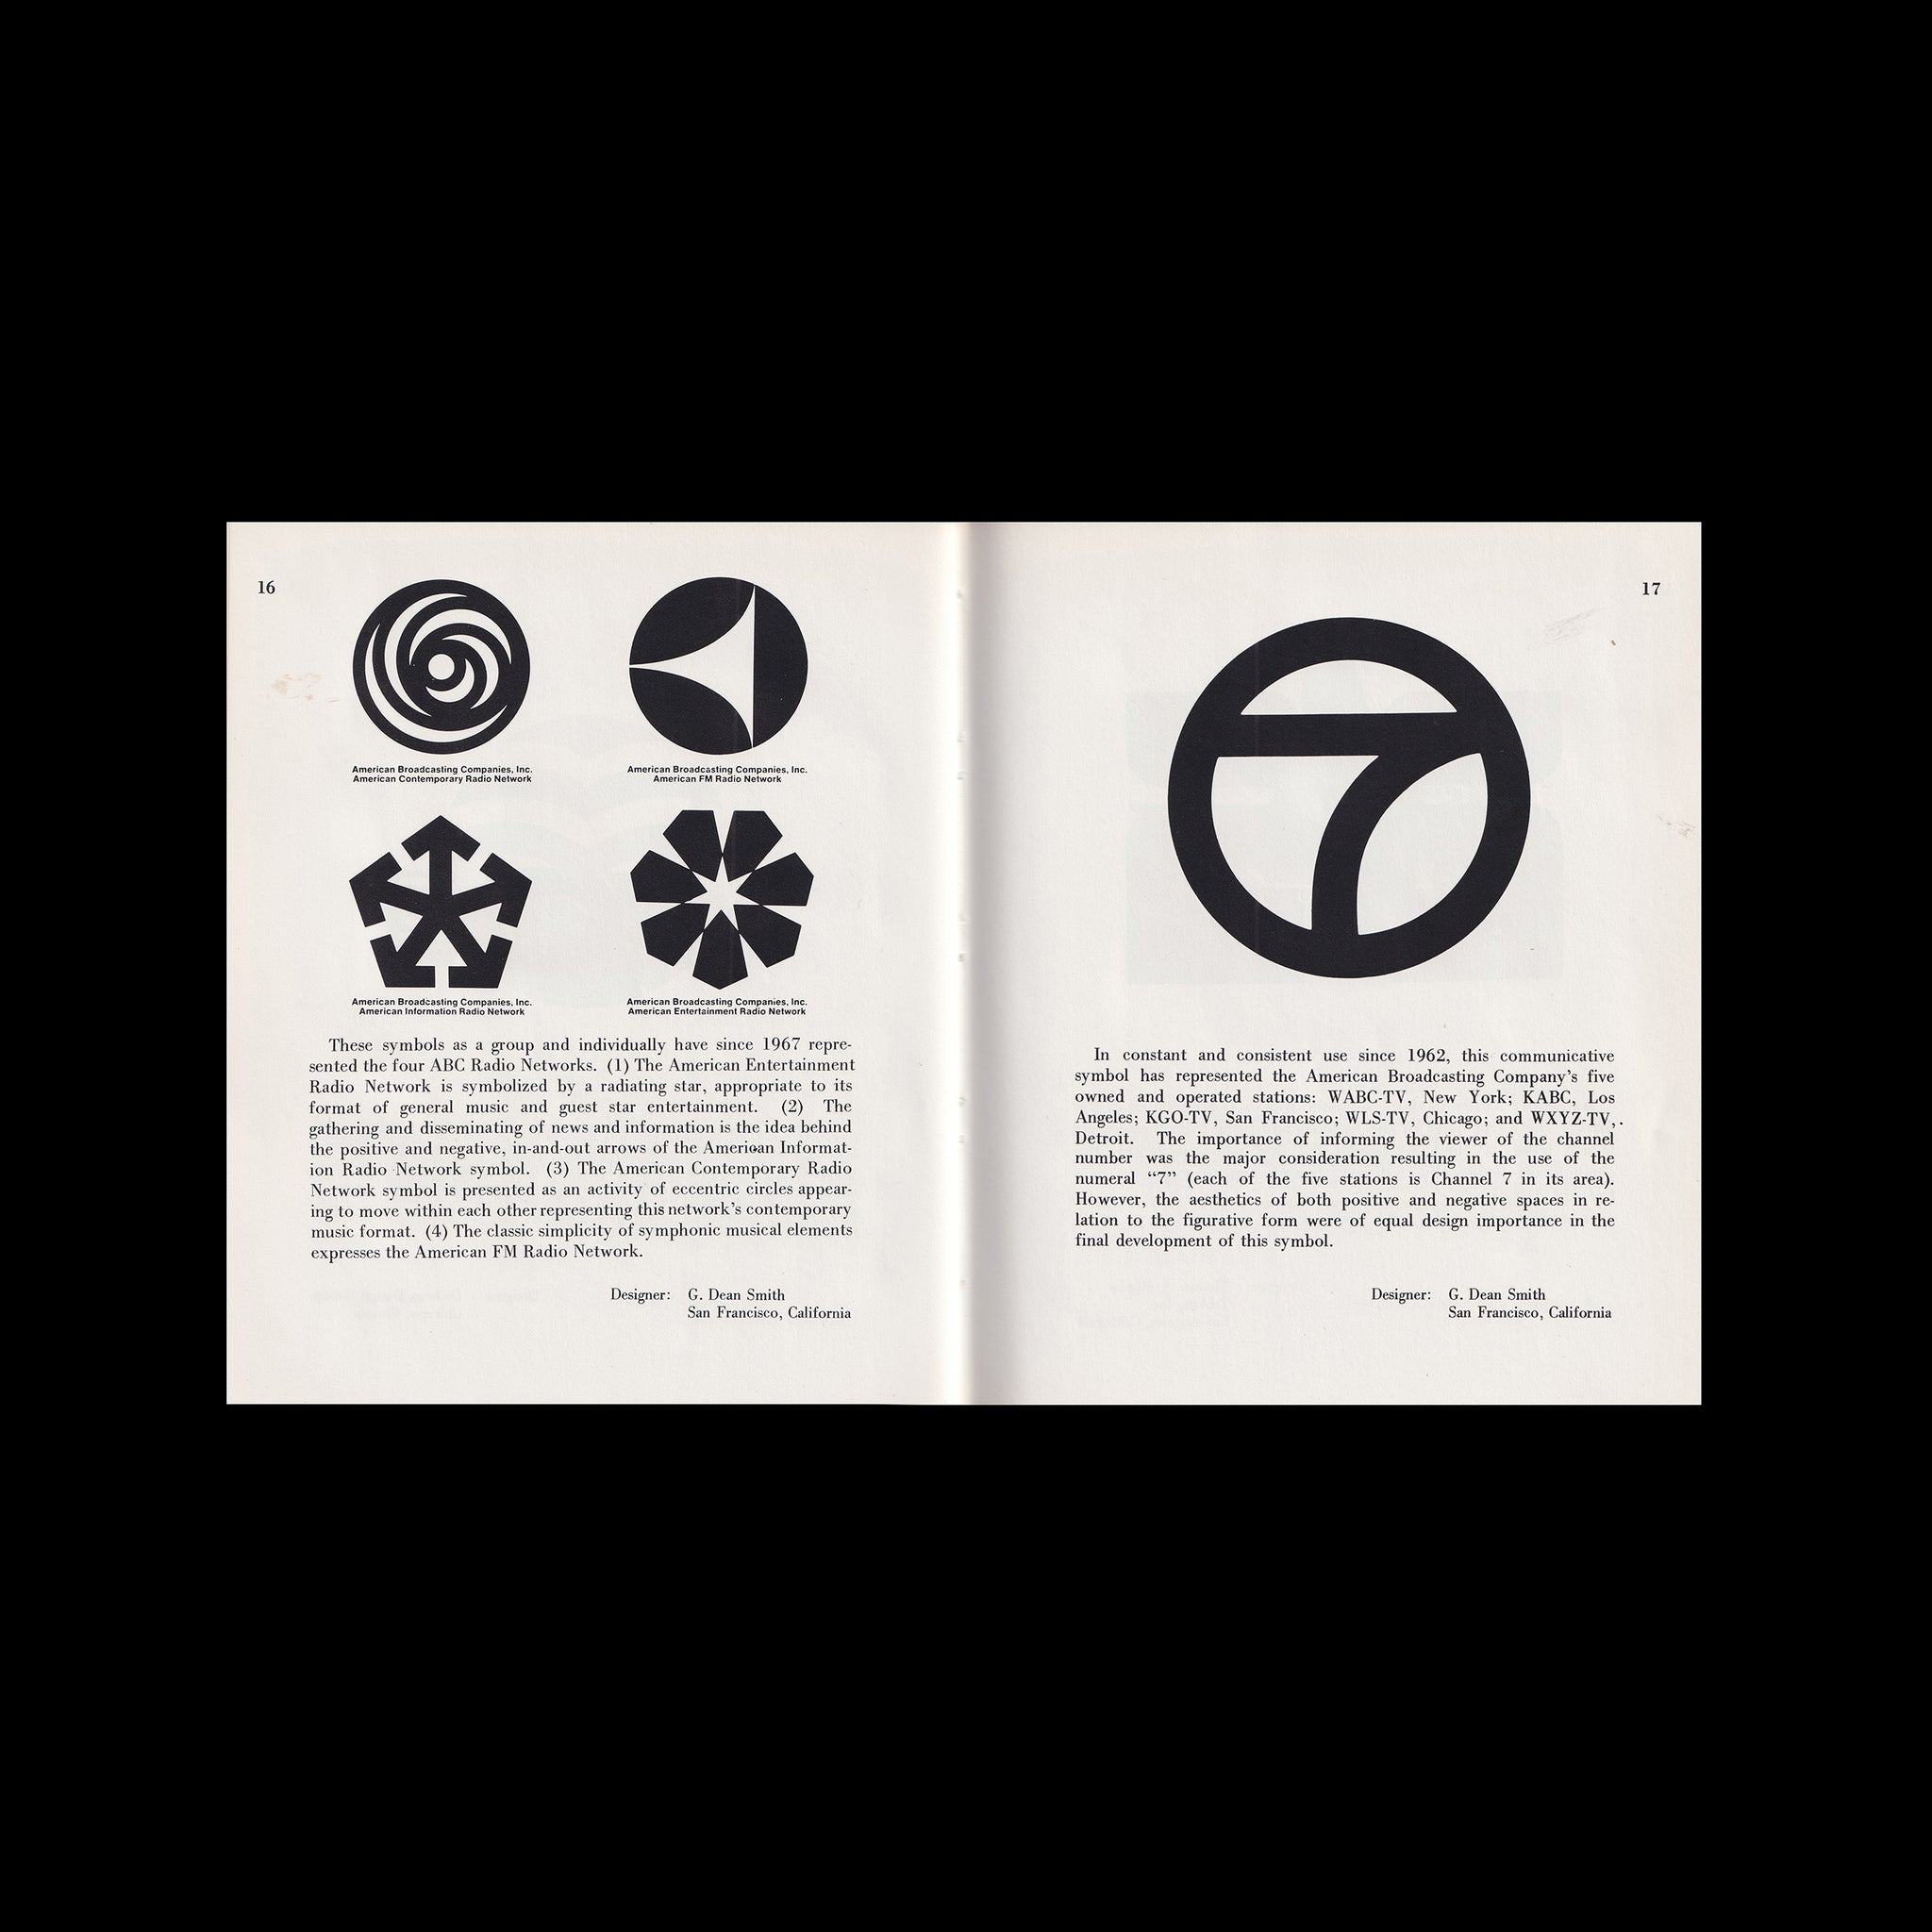 Designing Corporate Symbols, 1985